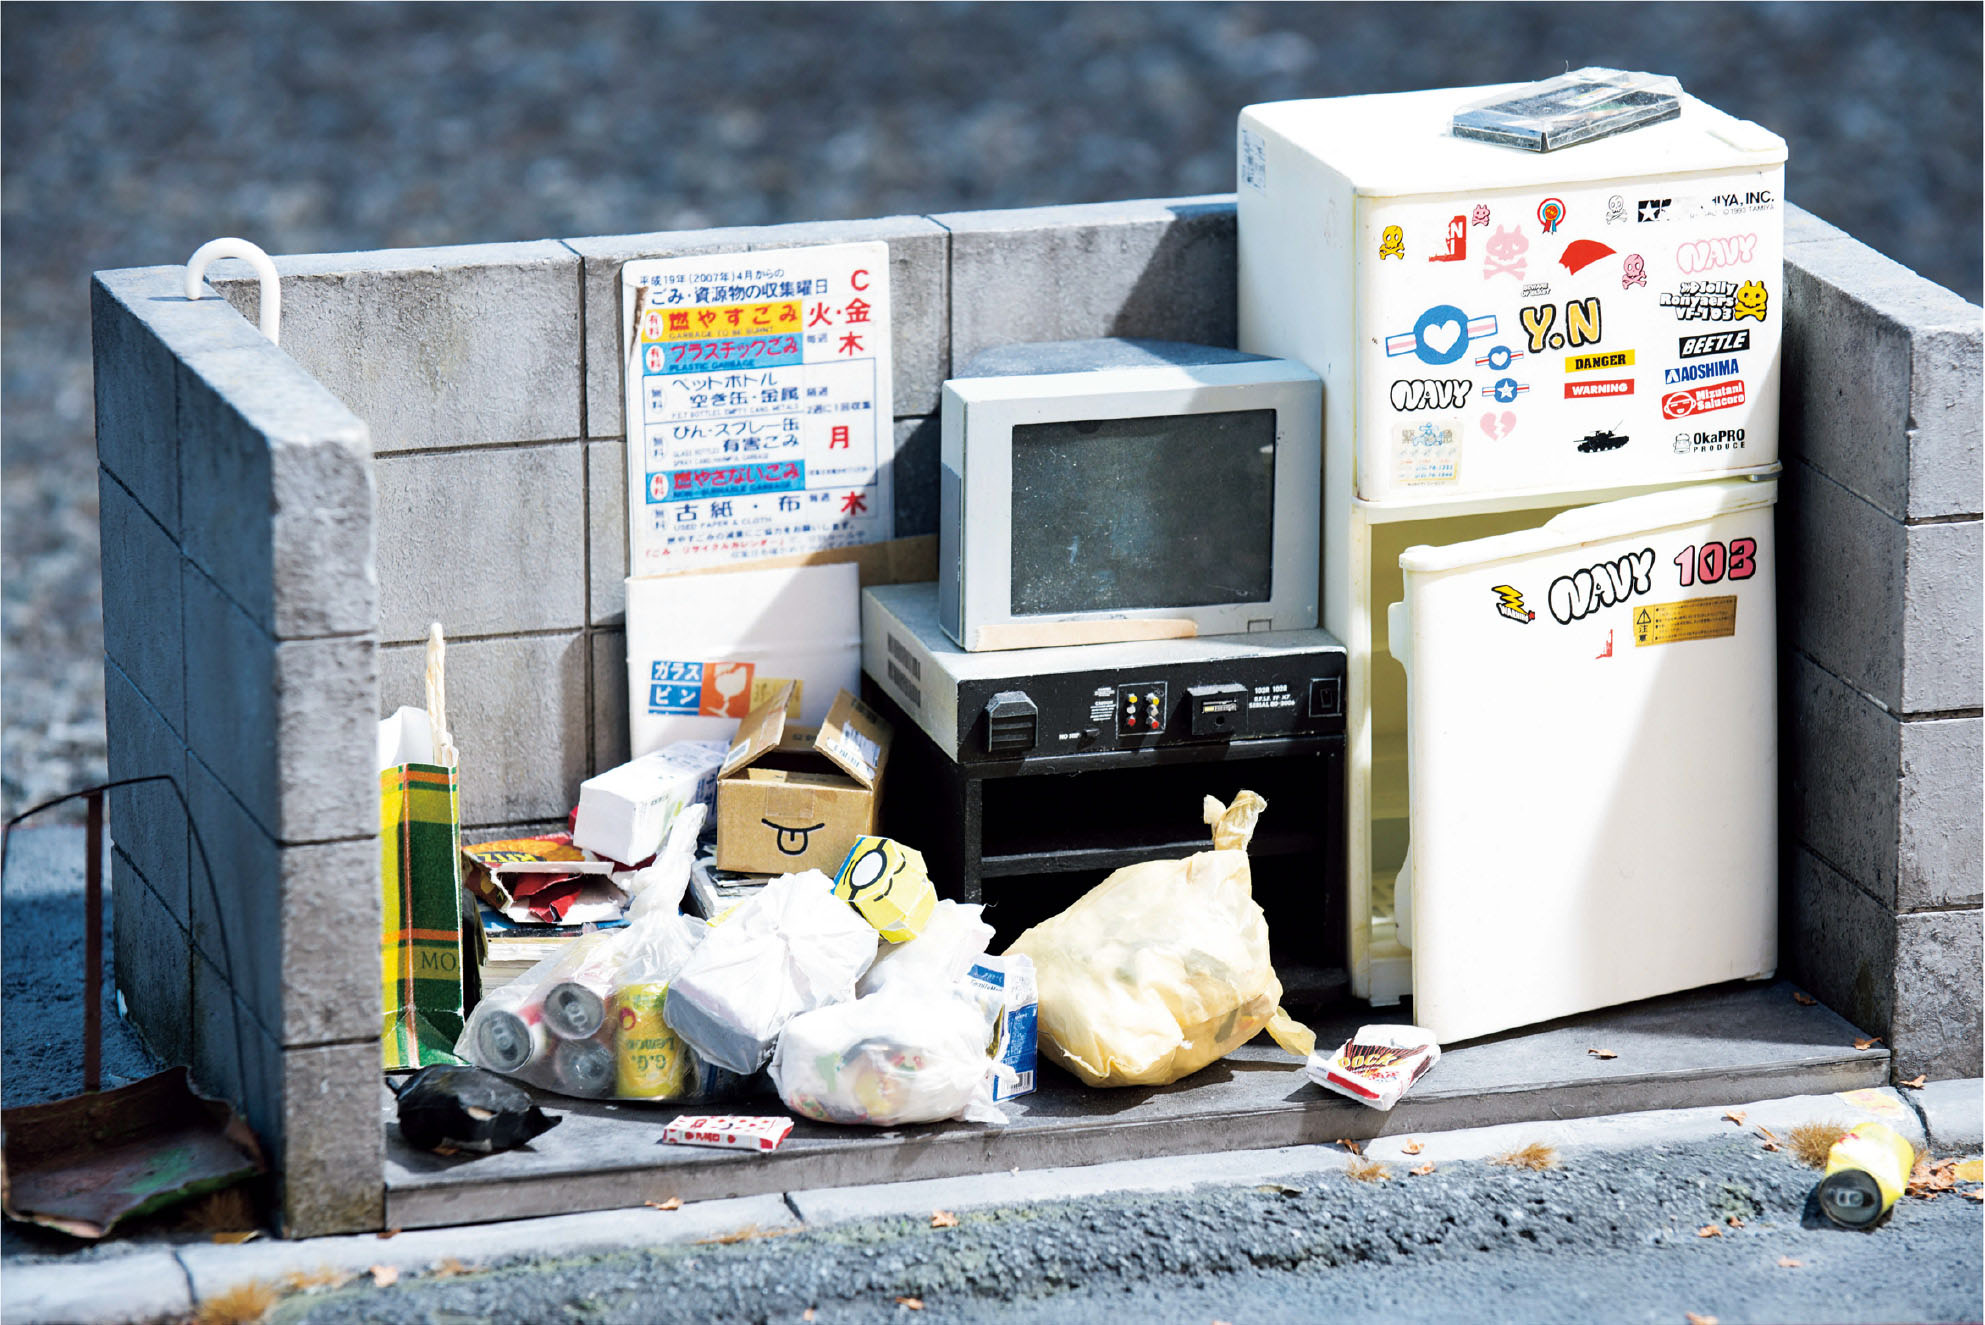 これが本当にジオラマなのか Mozuの生活感溢れる リアルワールド ゴミ捨て場 Mozu 超絶精密ジオラマワーク 第2回 Pictures